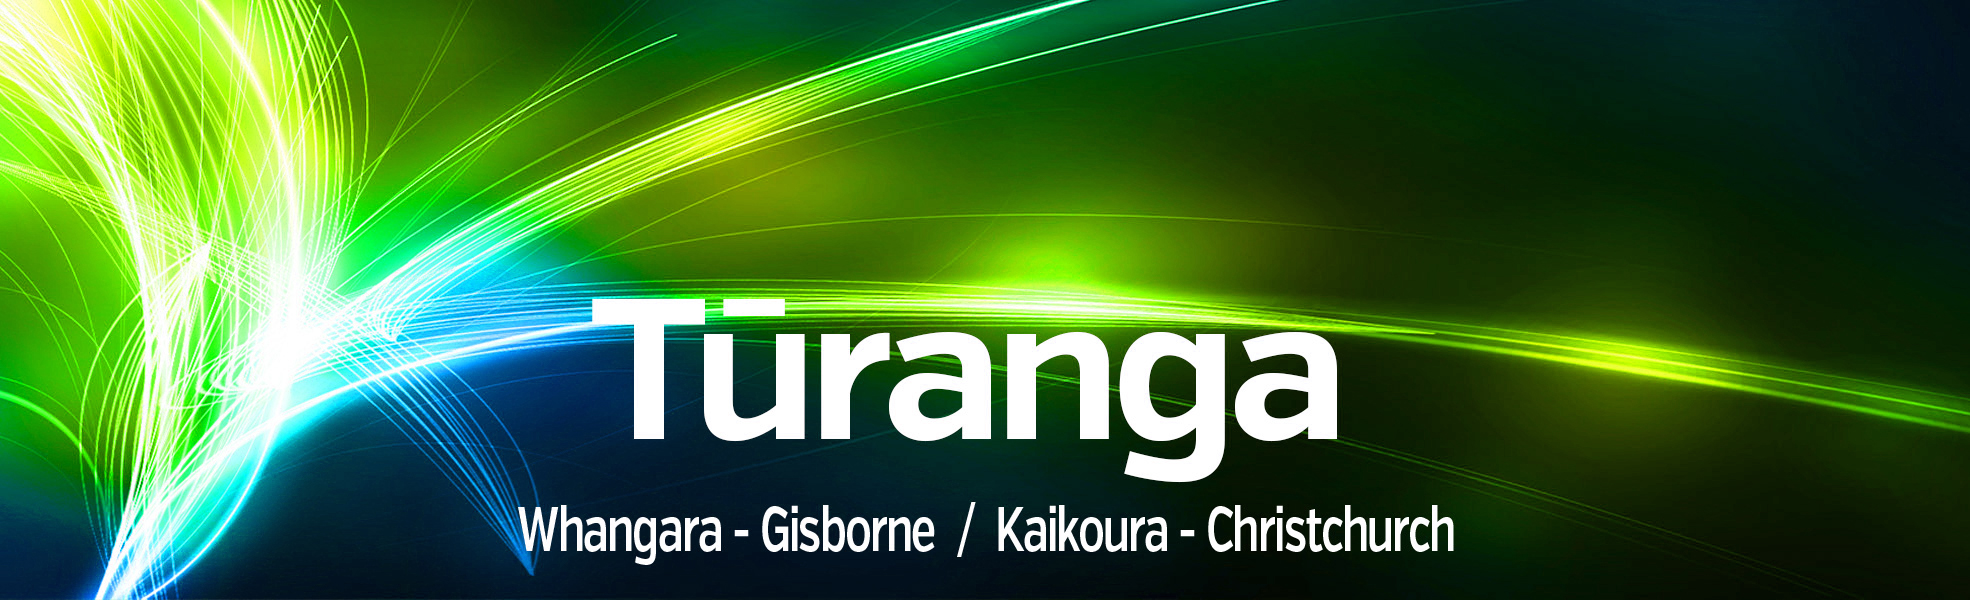 Turanga Whangara Gisborne Kaikoura Christchurch 1970x600 HeaderG